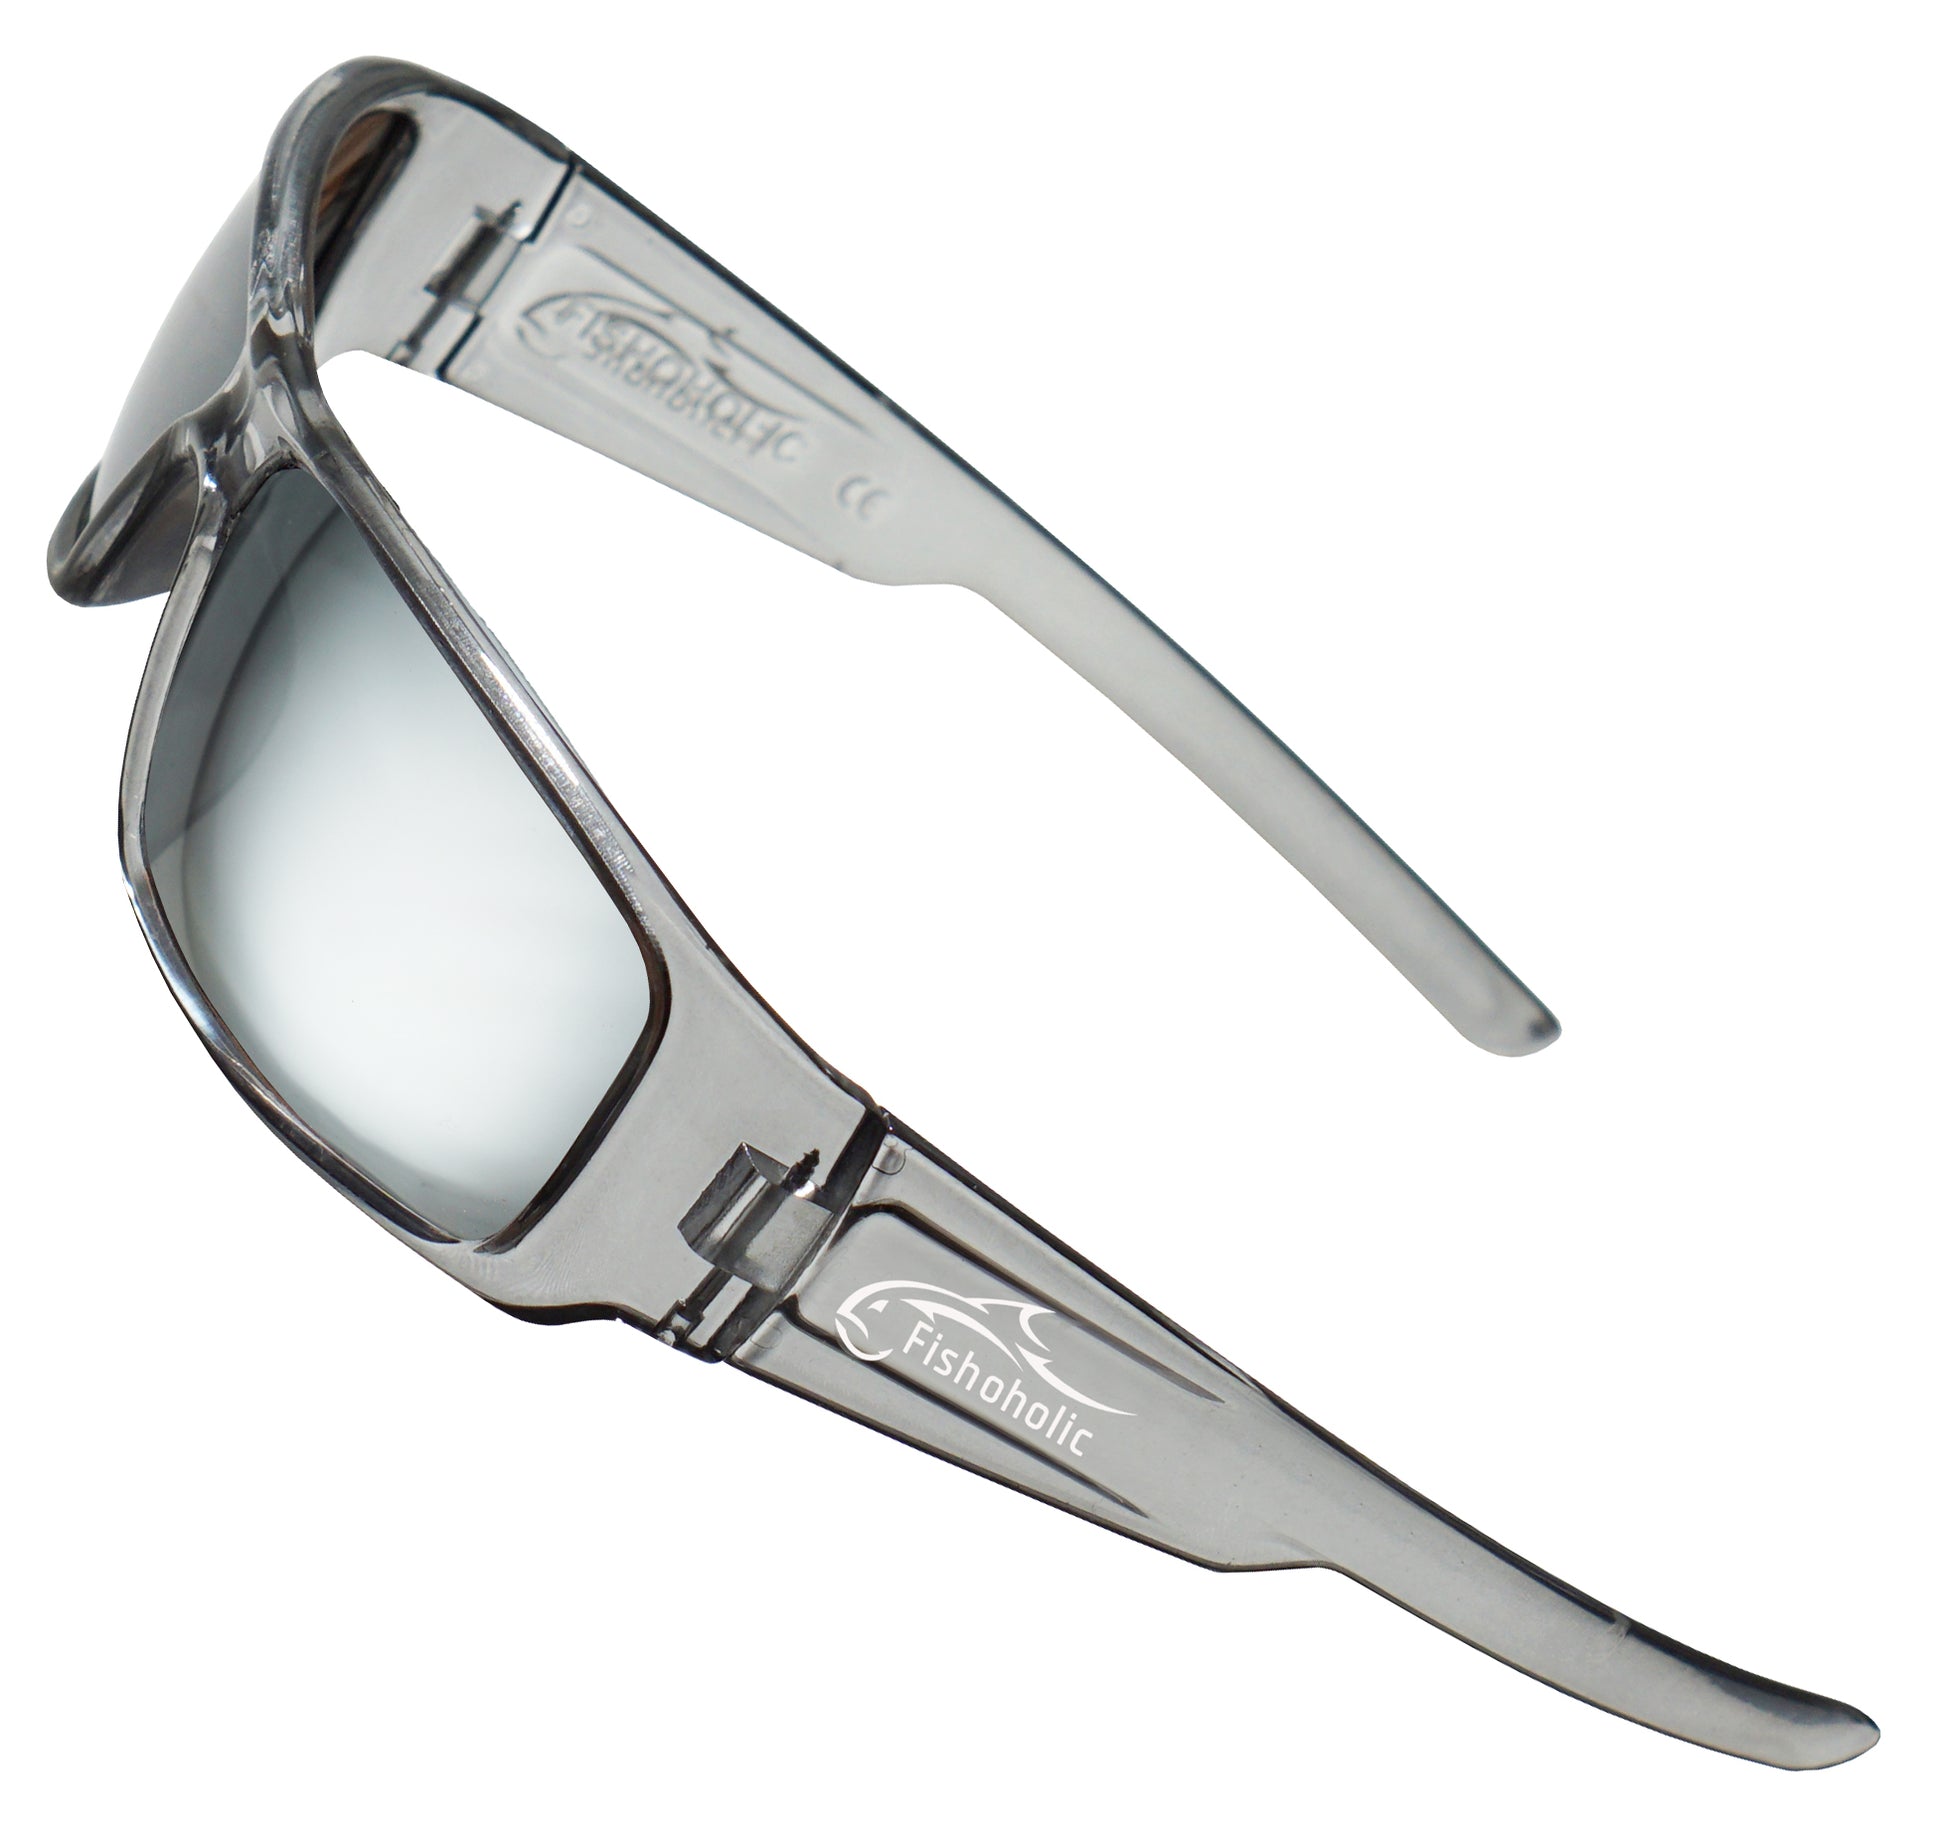 Fishoholic ICE-ICE Sunglasses - UV400 Polarized Sunglasses w' Case & P